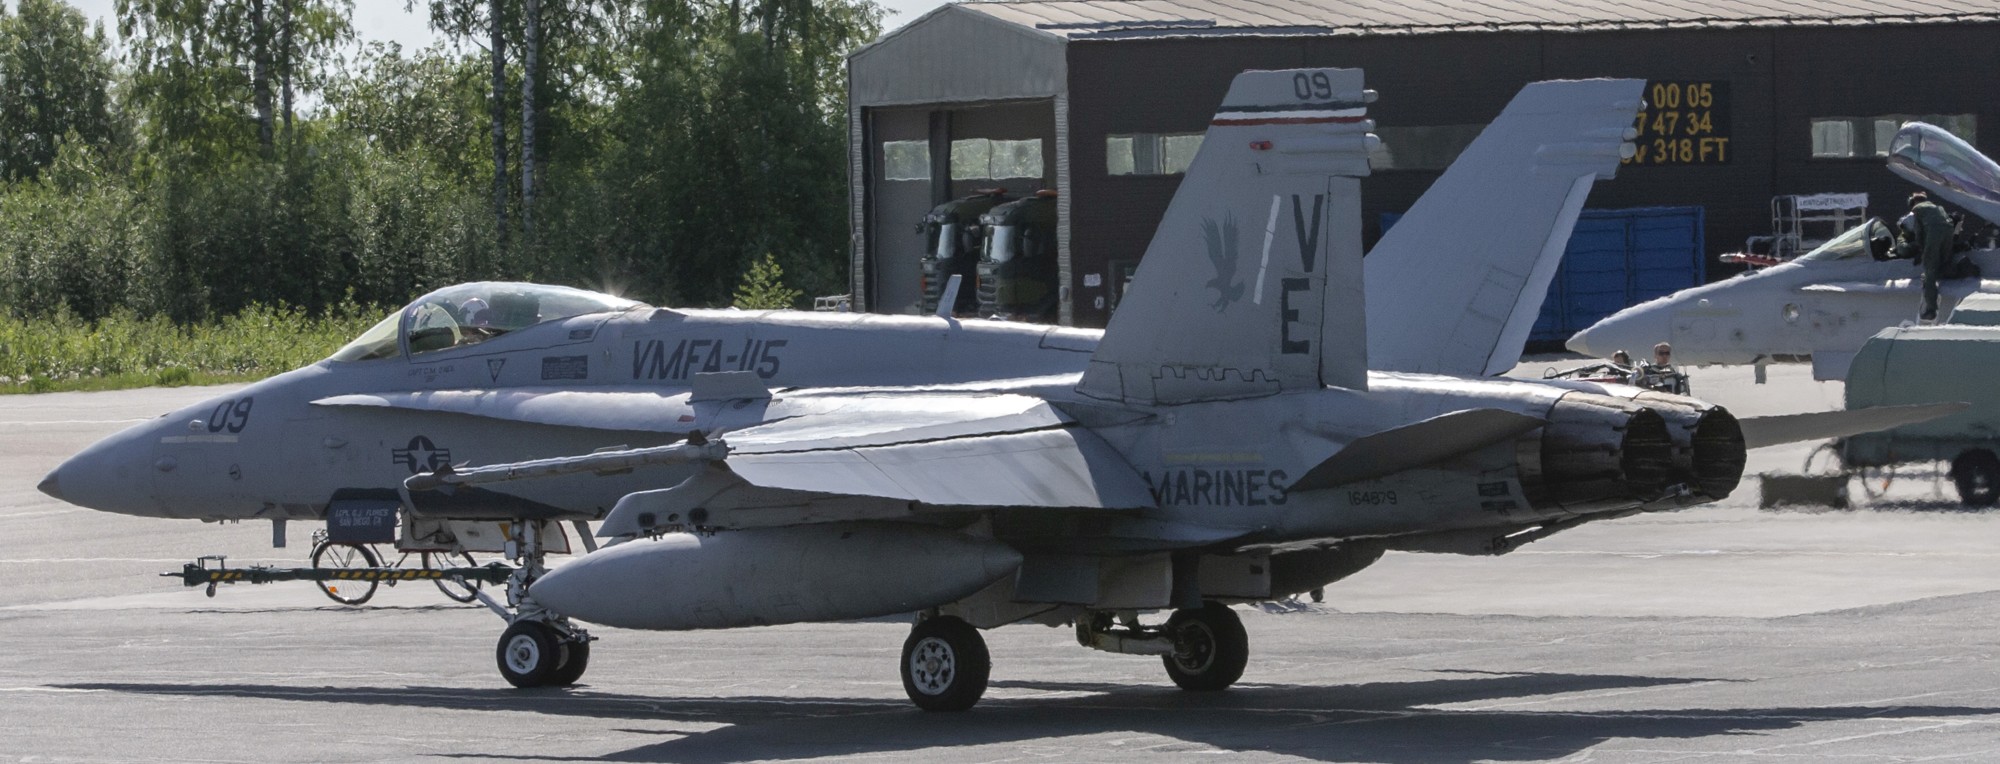 vmfa-115 silver eagles marine fighter attack squadron usmc f/a-18c hornet 221